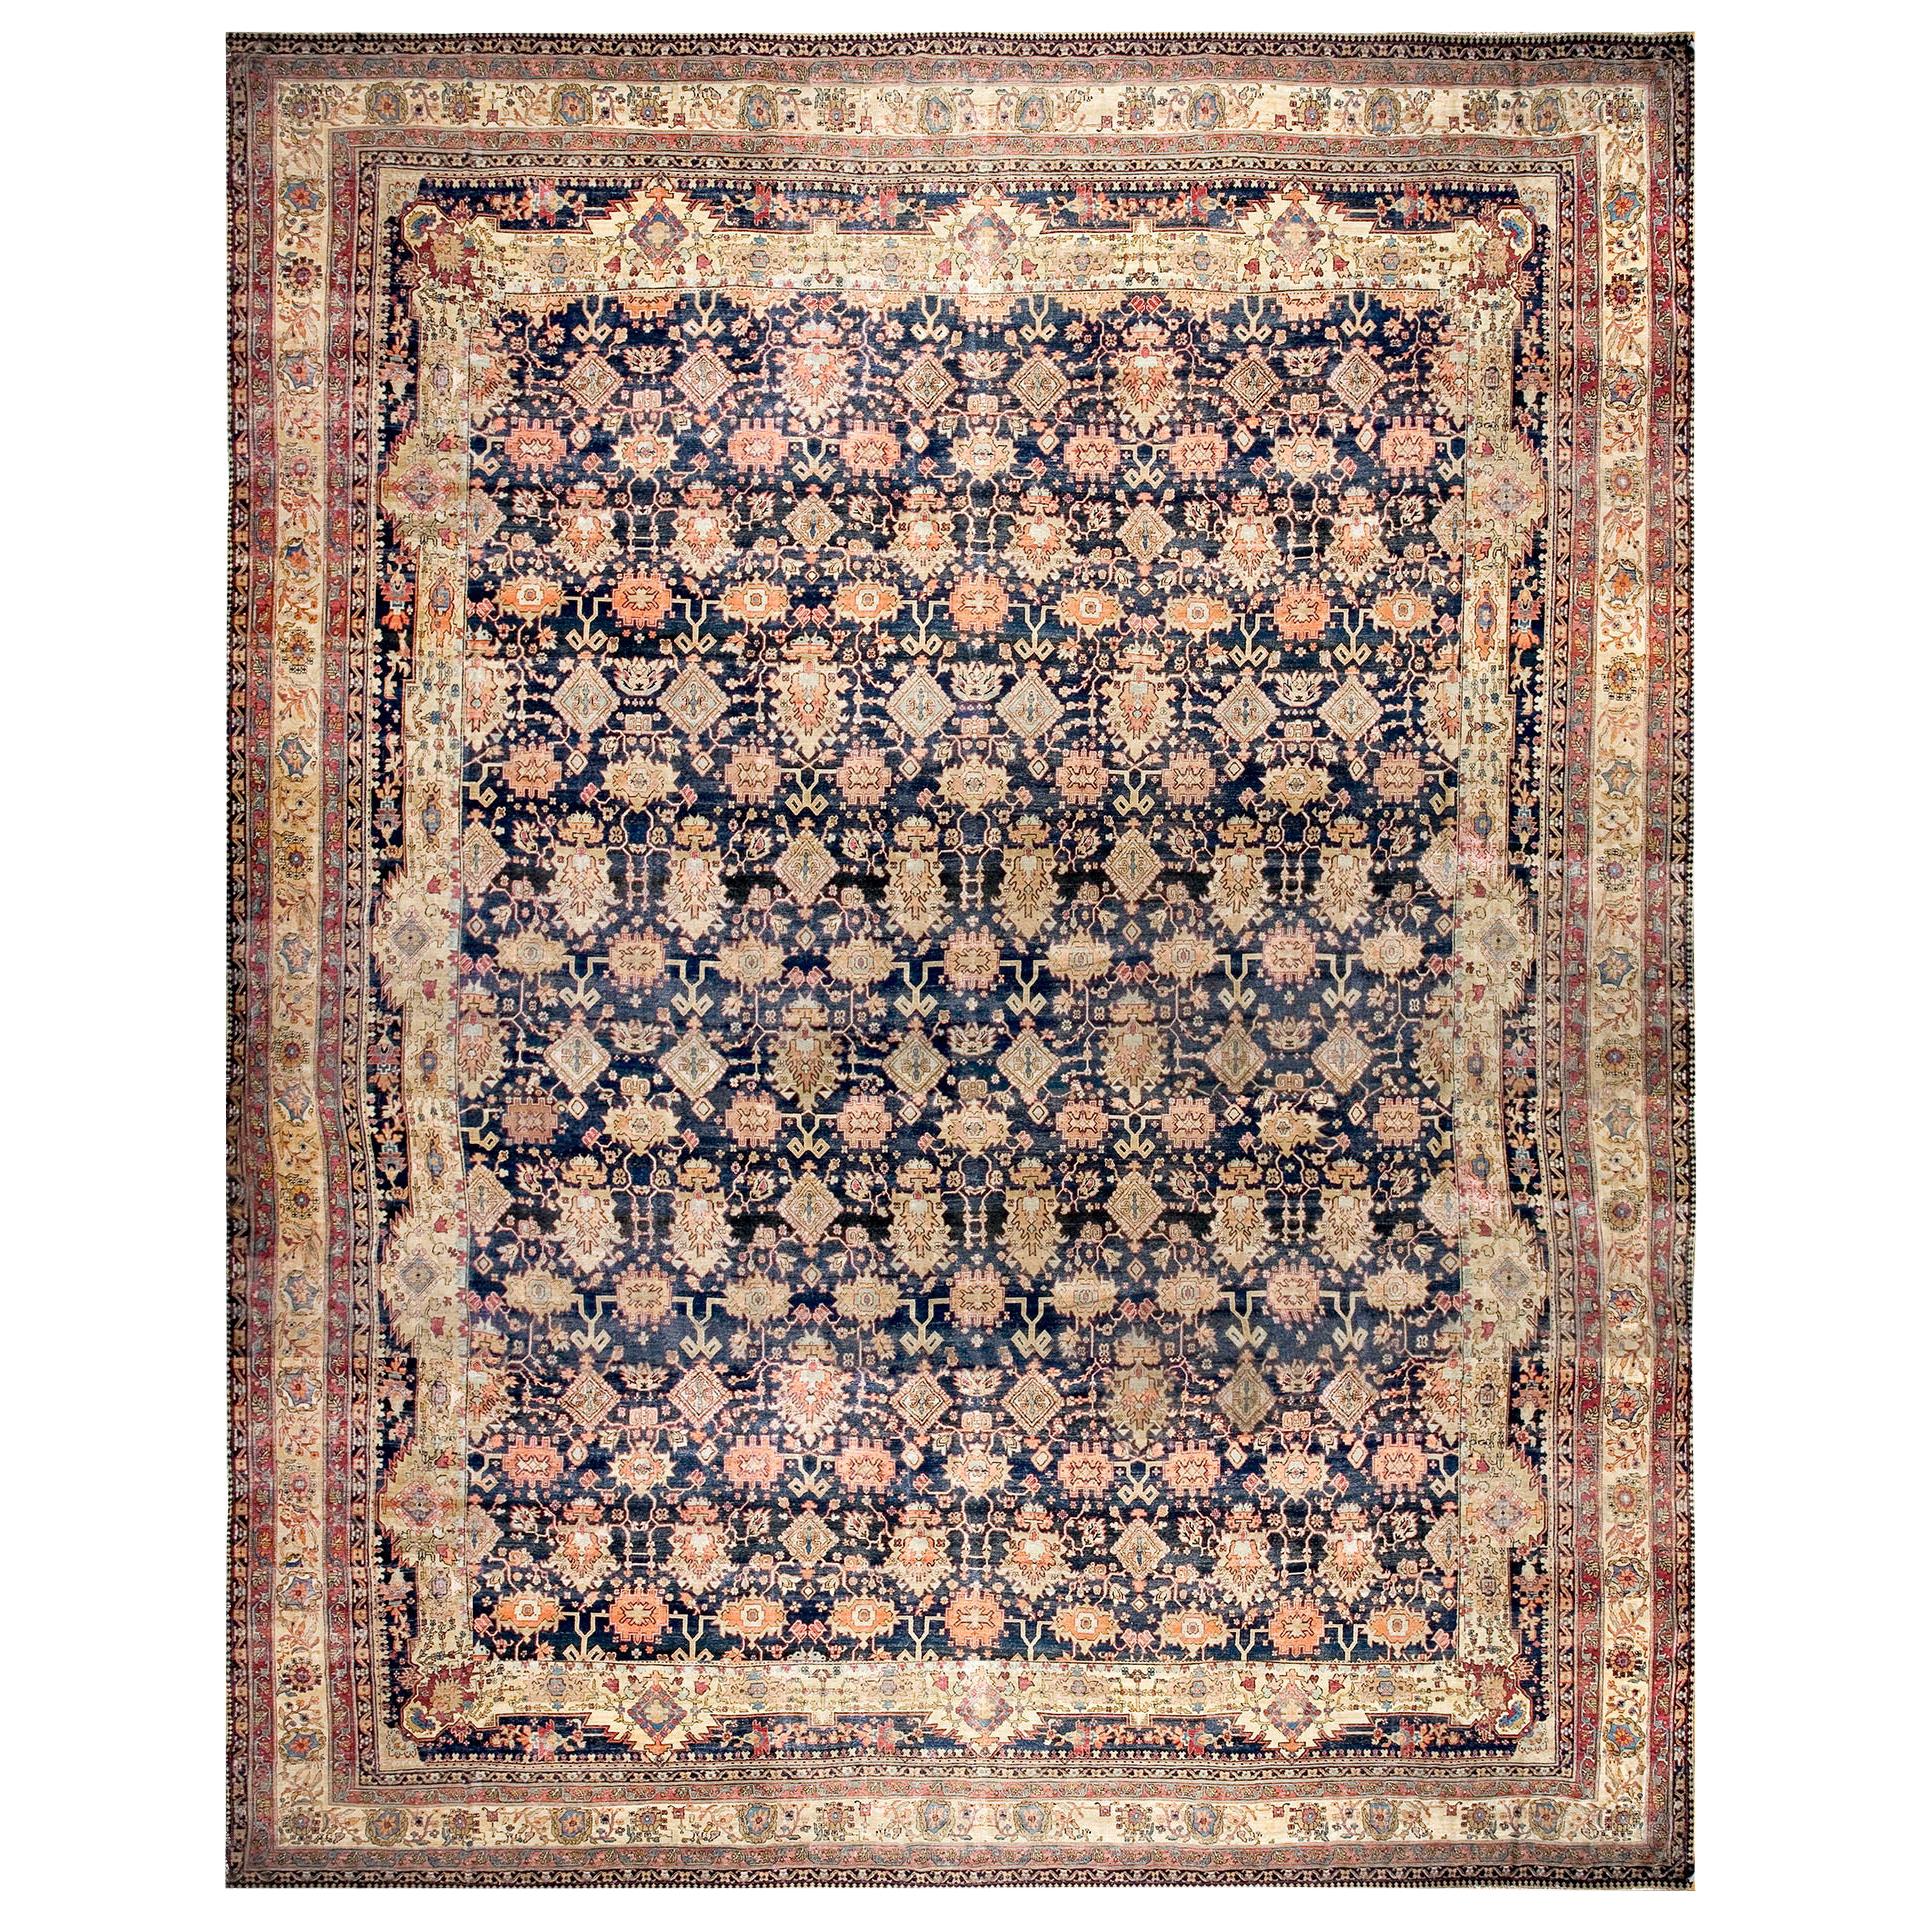 Persischer Kerman-Lavar-Teppich des 19. Jahrhunderts ( 16''6 x 22''6 - 503 x 685)